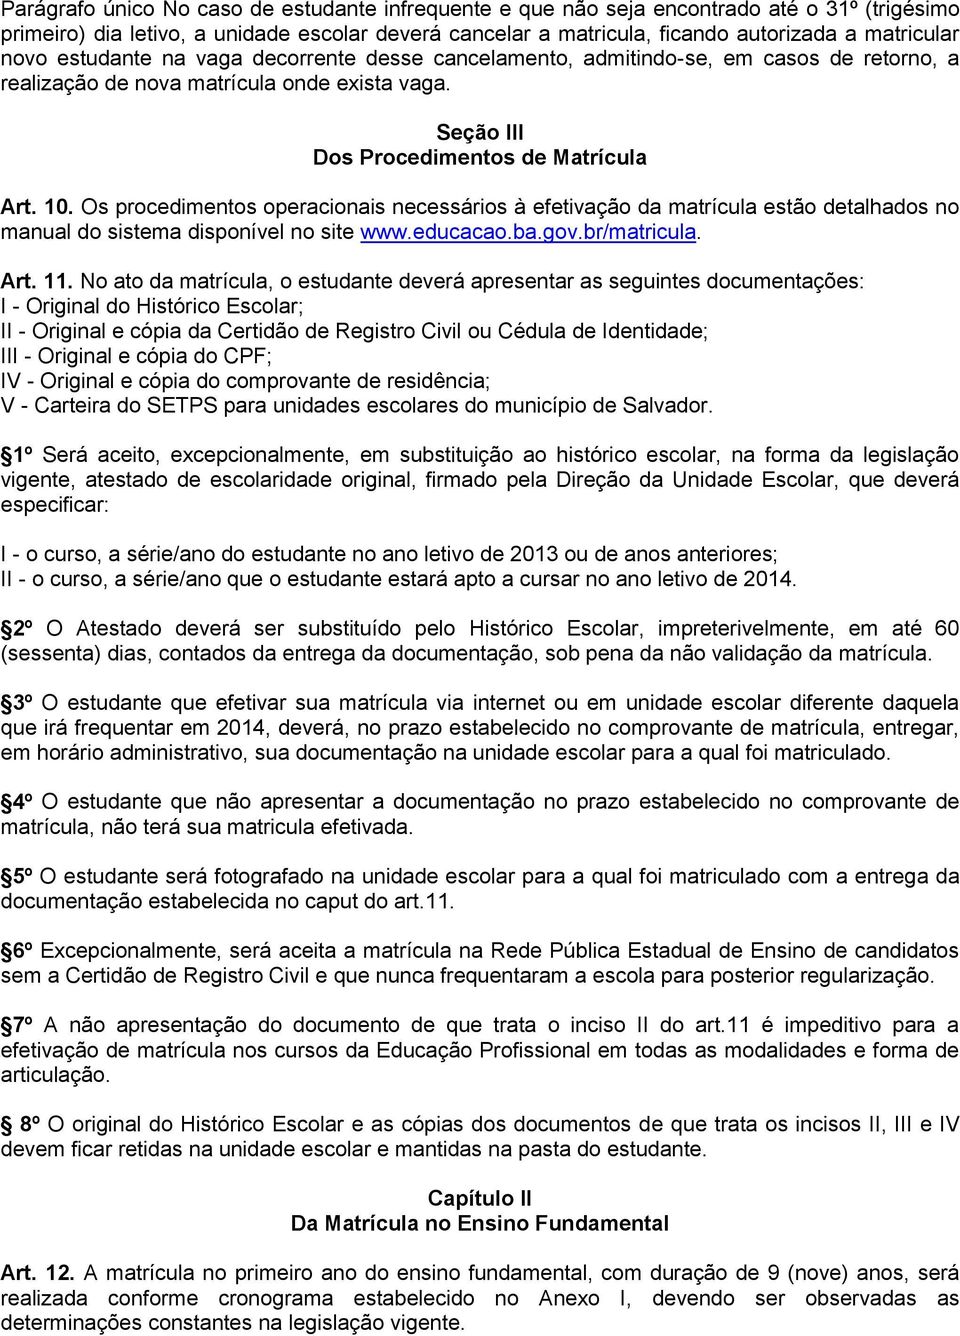 Os procedimentos operacionais necessários à efetivação da matrícula estão detalhados no manual do sistema disponível no site www.educacao.ba.gov.br/matricula. Art. 11.